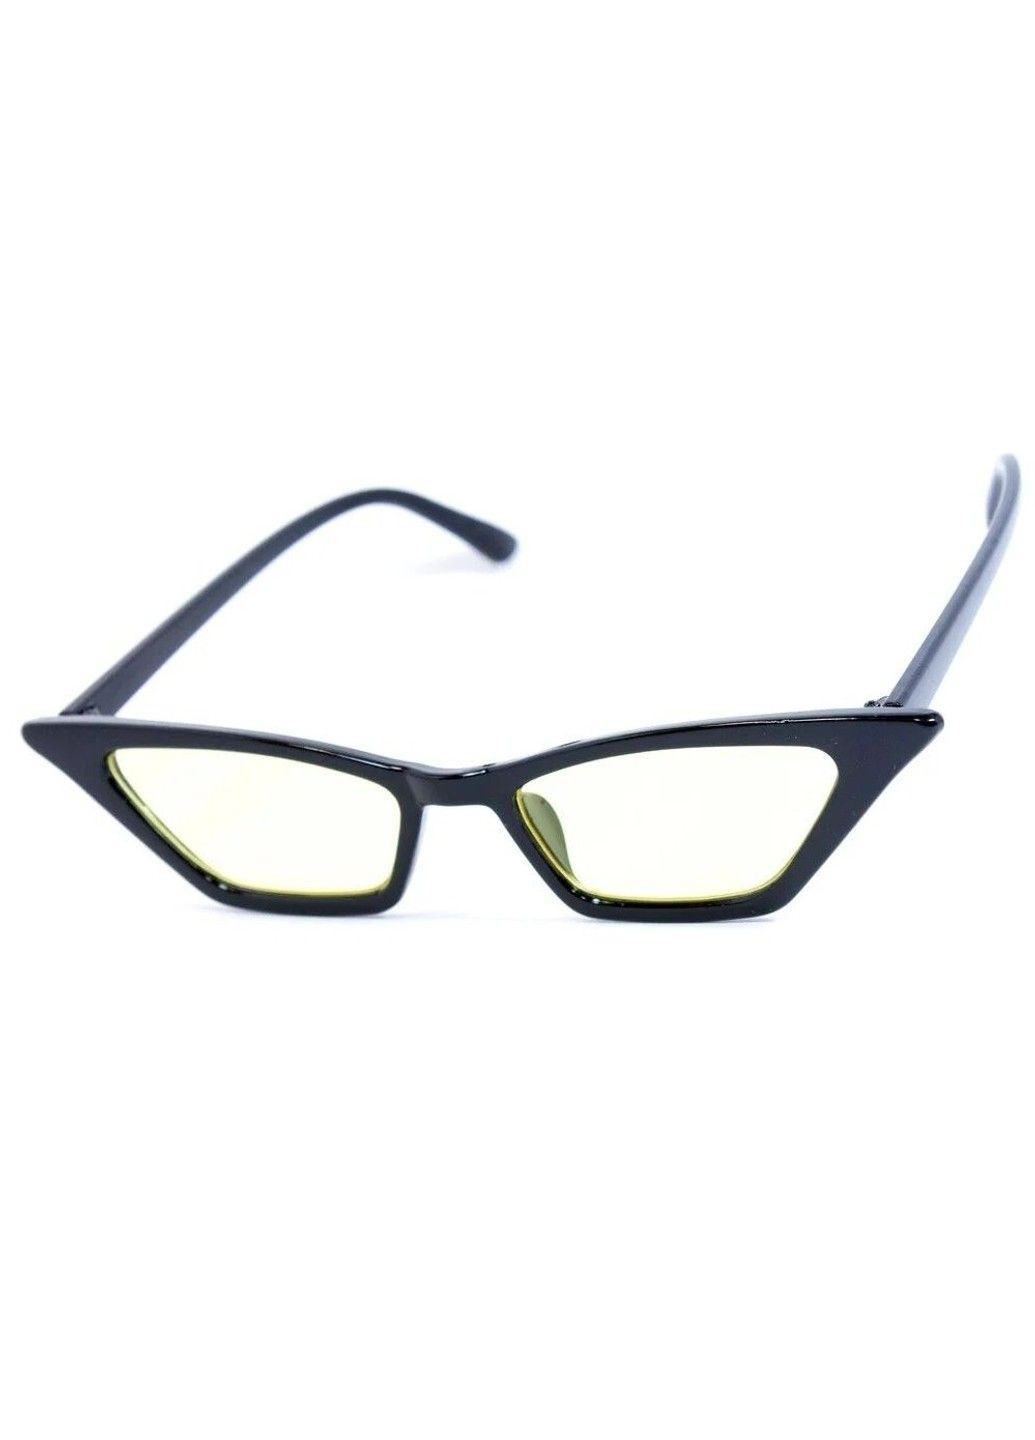 Cолнцезащитные женские очки 0005-6 BR-S (291984071)